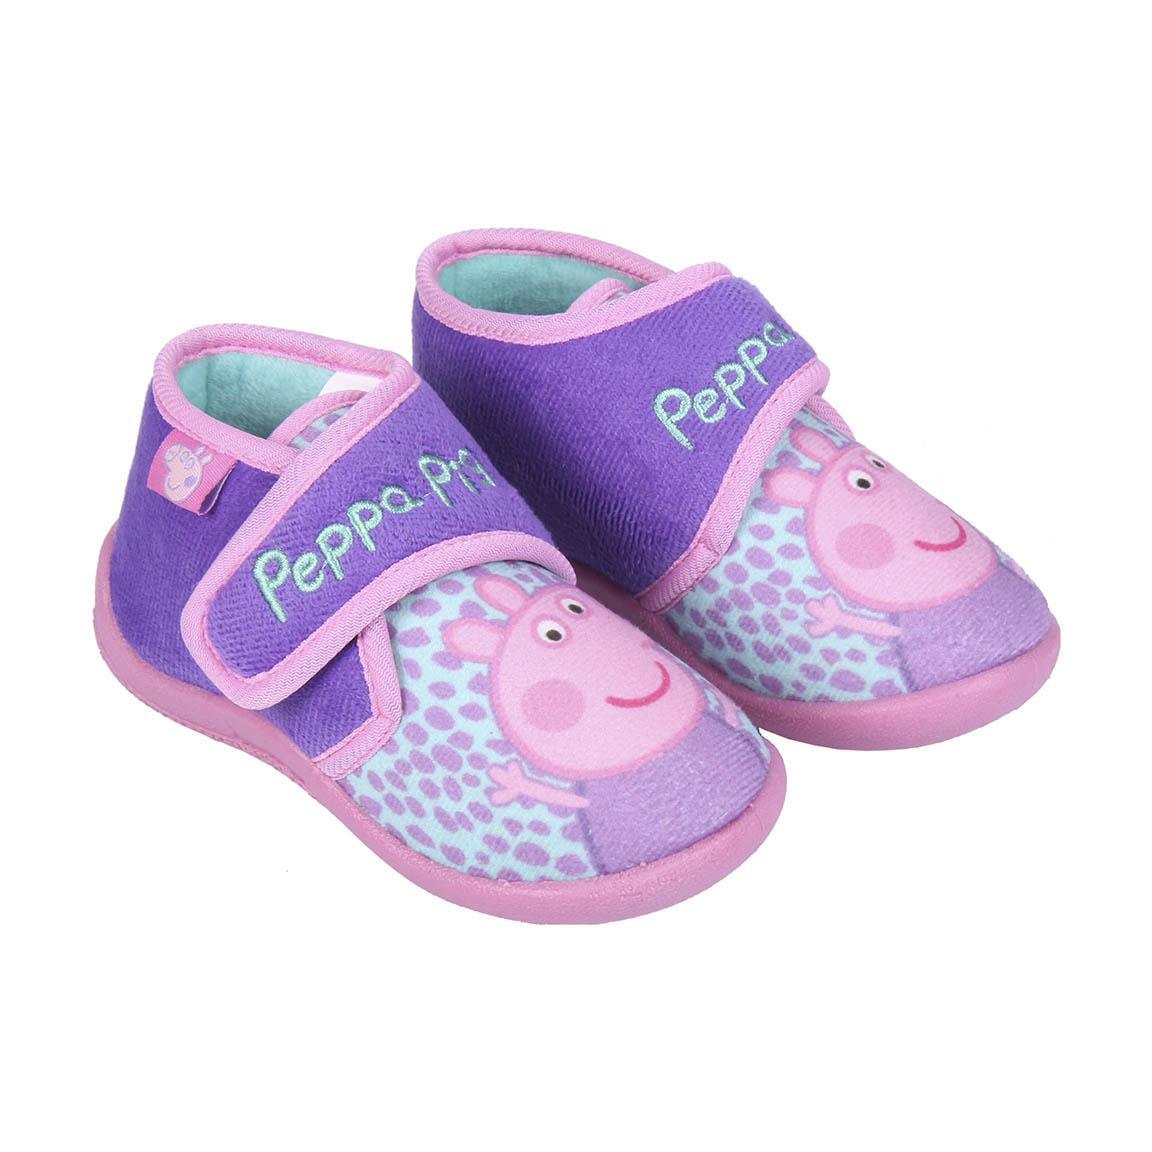 Pantofole Bambino - PEPPA PIG - Magic Dreams Store